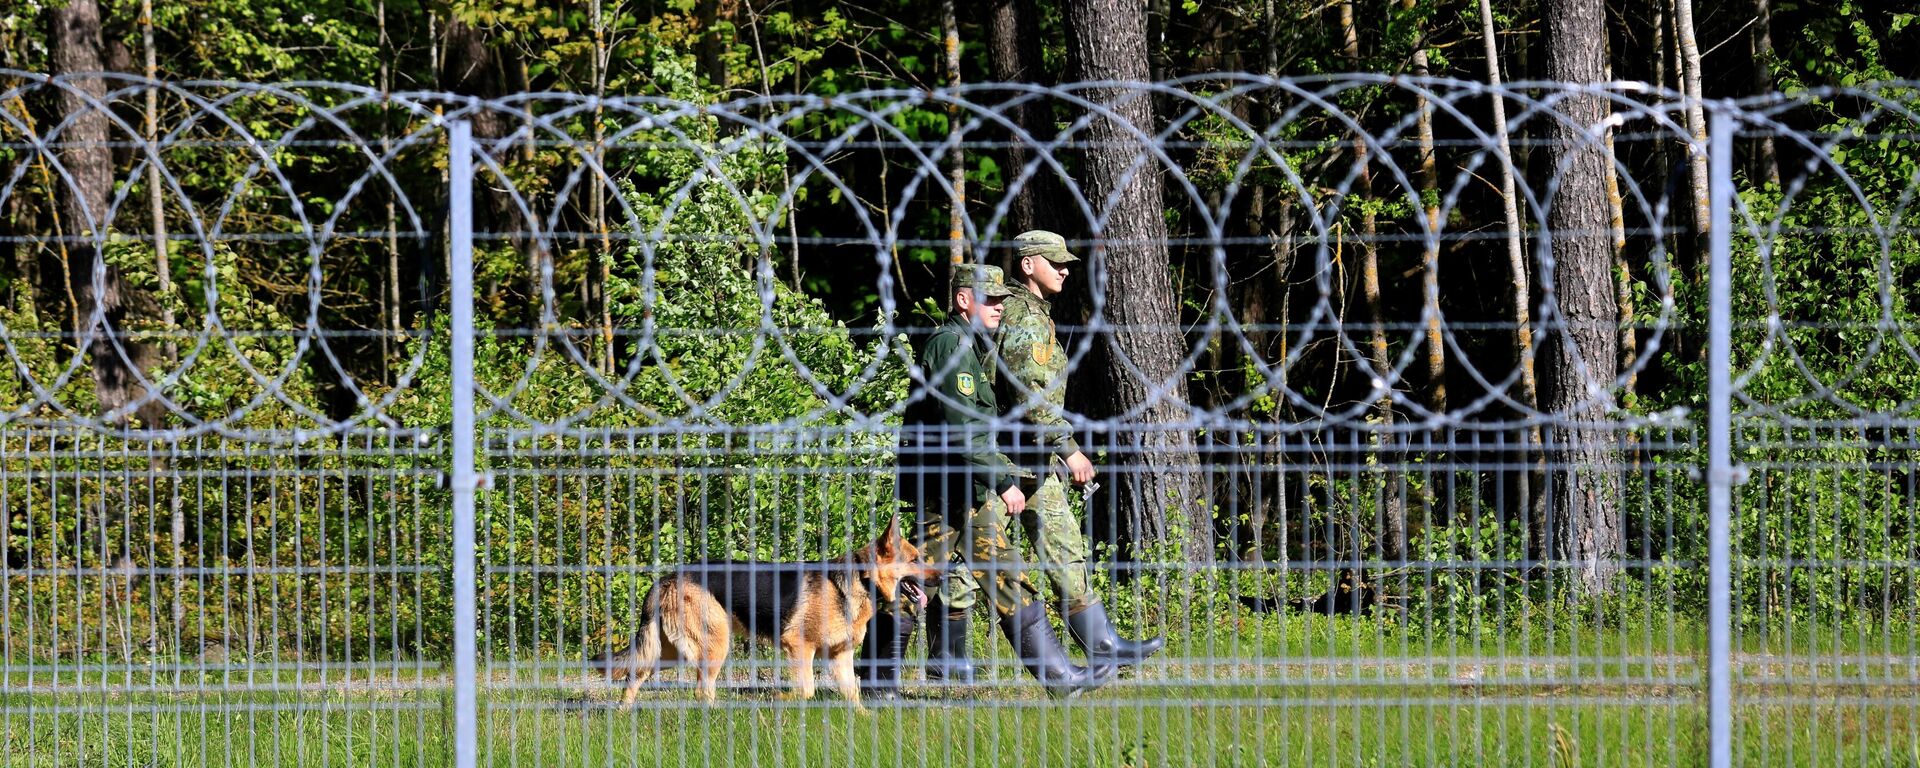 Белорусские пограничники патрулируют за забором границы во время акции протеста организации Репортеры без границ - Sputnik Молдова, 1920, 10.08.2021